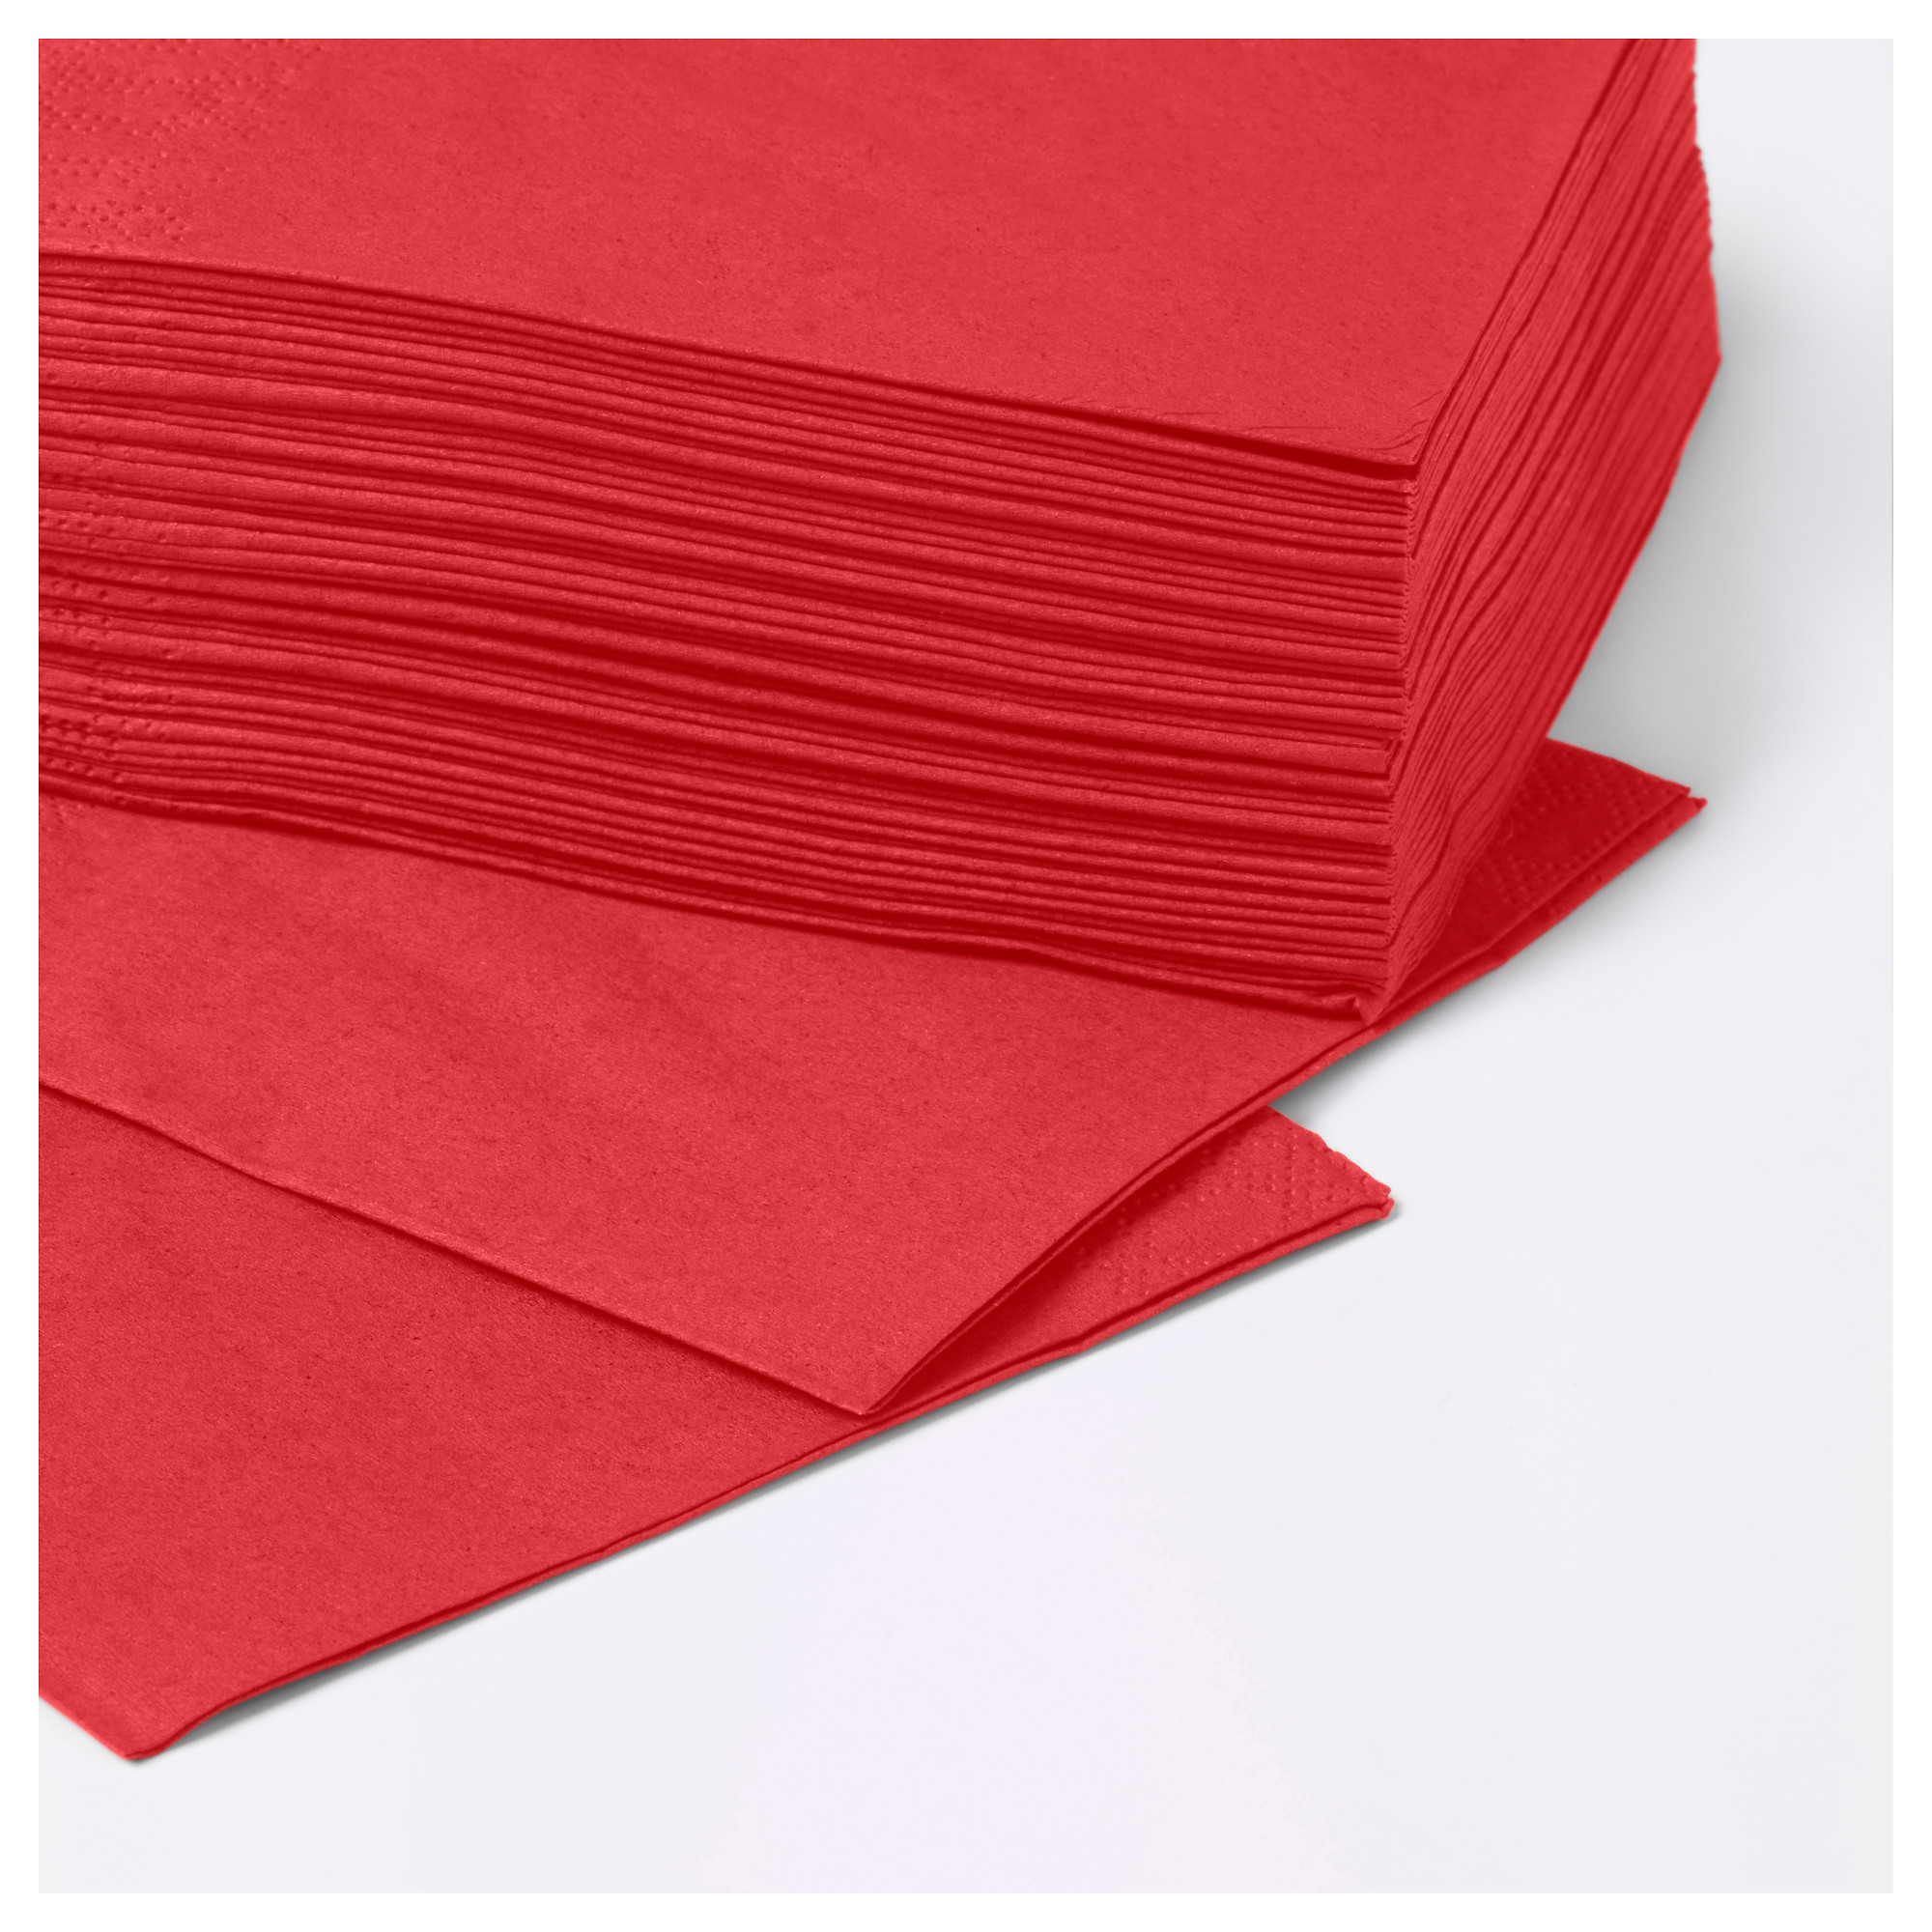 Красные салфетки купить. Салфетка бумажная 50шт/упак. Красная салфетка. Салфетки бумажные красные. Салфетка красного цвета.